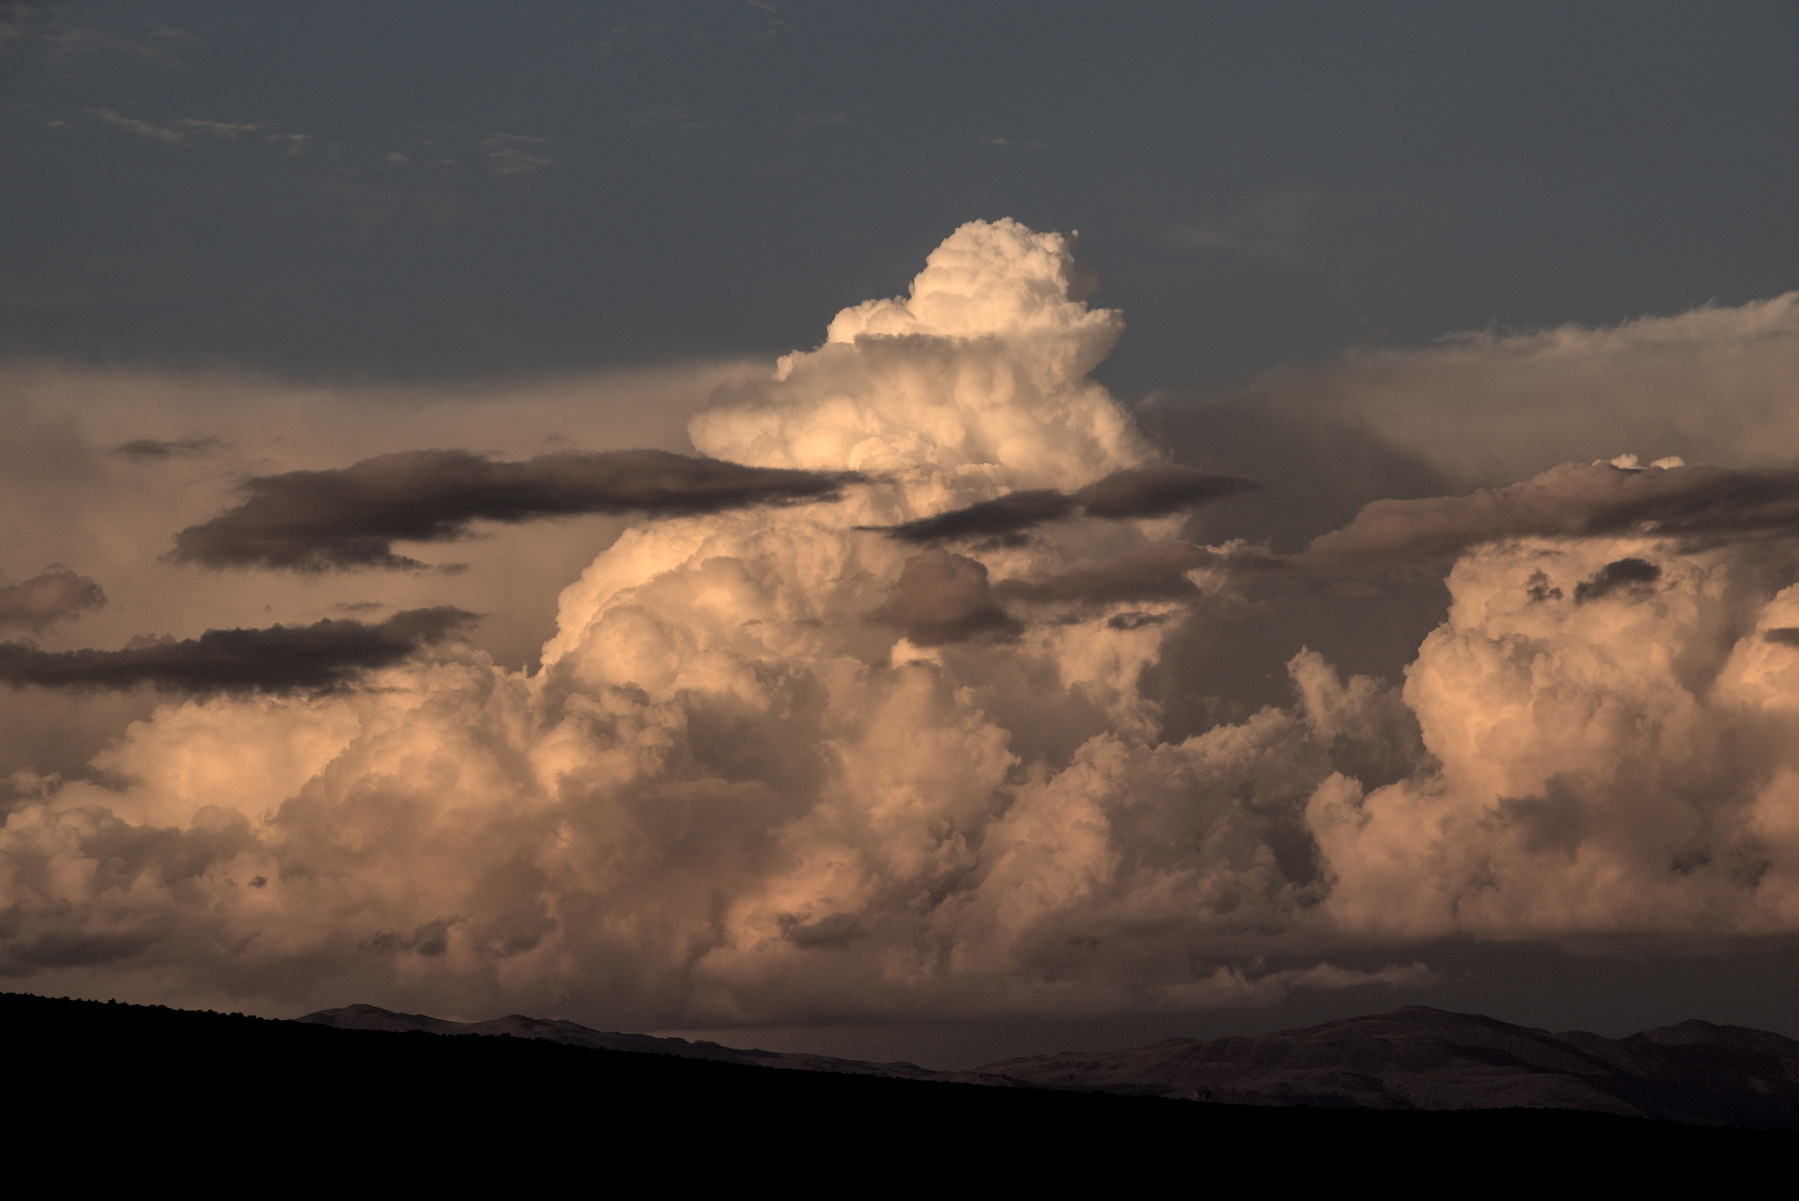 Huge cumulonimbus cloud, lit by the setting sun.